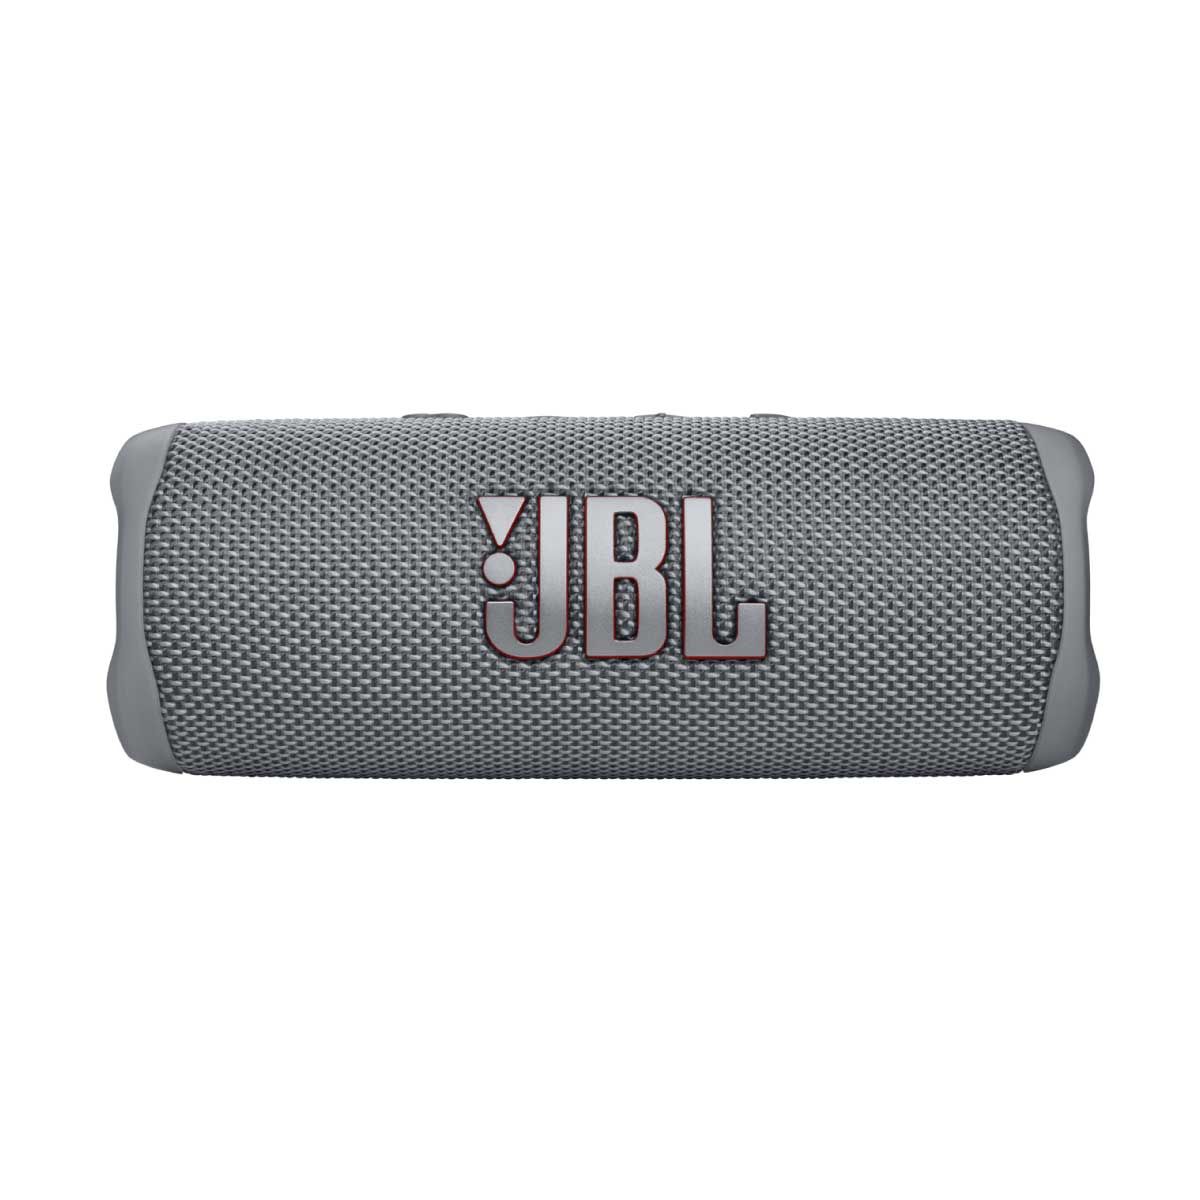 JBL ลำโพงพกพาบลูทูธ รุ่น FLIP6 สีเทา กันฝุ่น/กันนํ้า